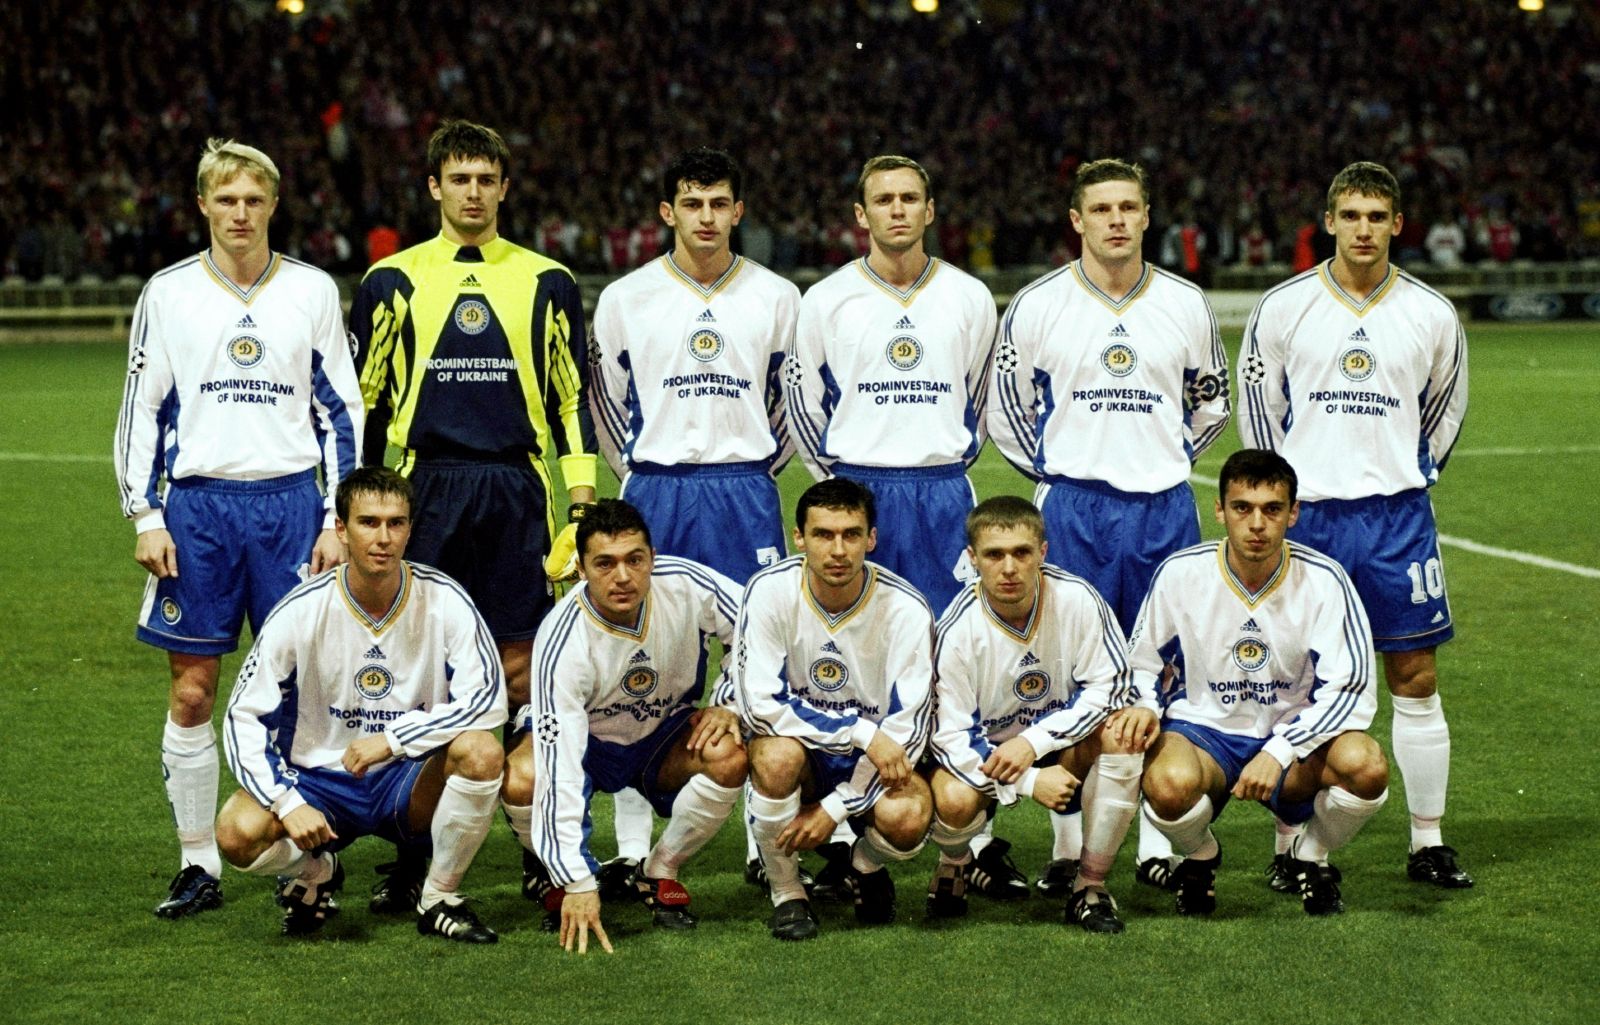 A Kijev a 90-es években hazájában egyeduralkodónak számított, de Európában is sikerült észrevetetnie magát, például amikor Sevcsenko mesterhármasával és Rebrov góljával 4-0-ra legyőzték a Barcelonát a Camp Nouban. /Fotó: thesefootballtimes.co